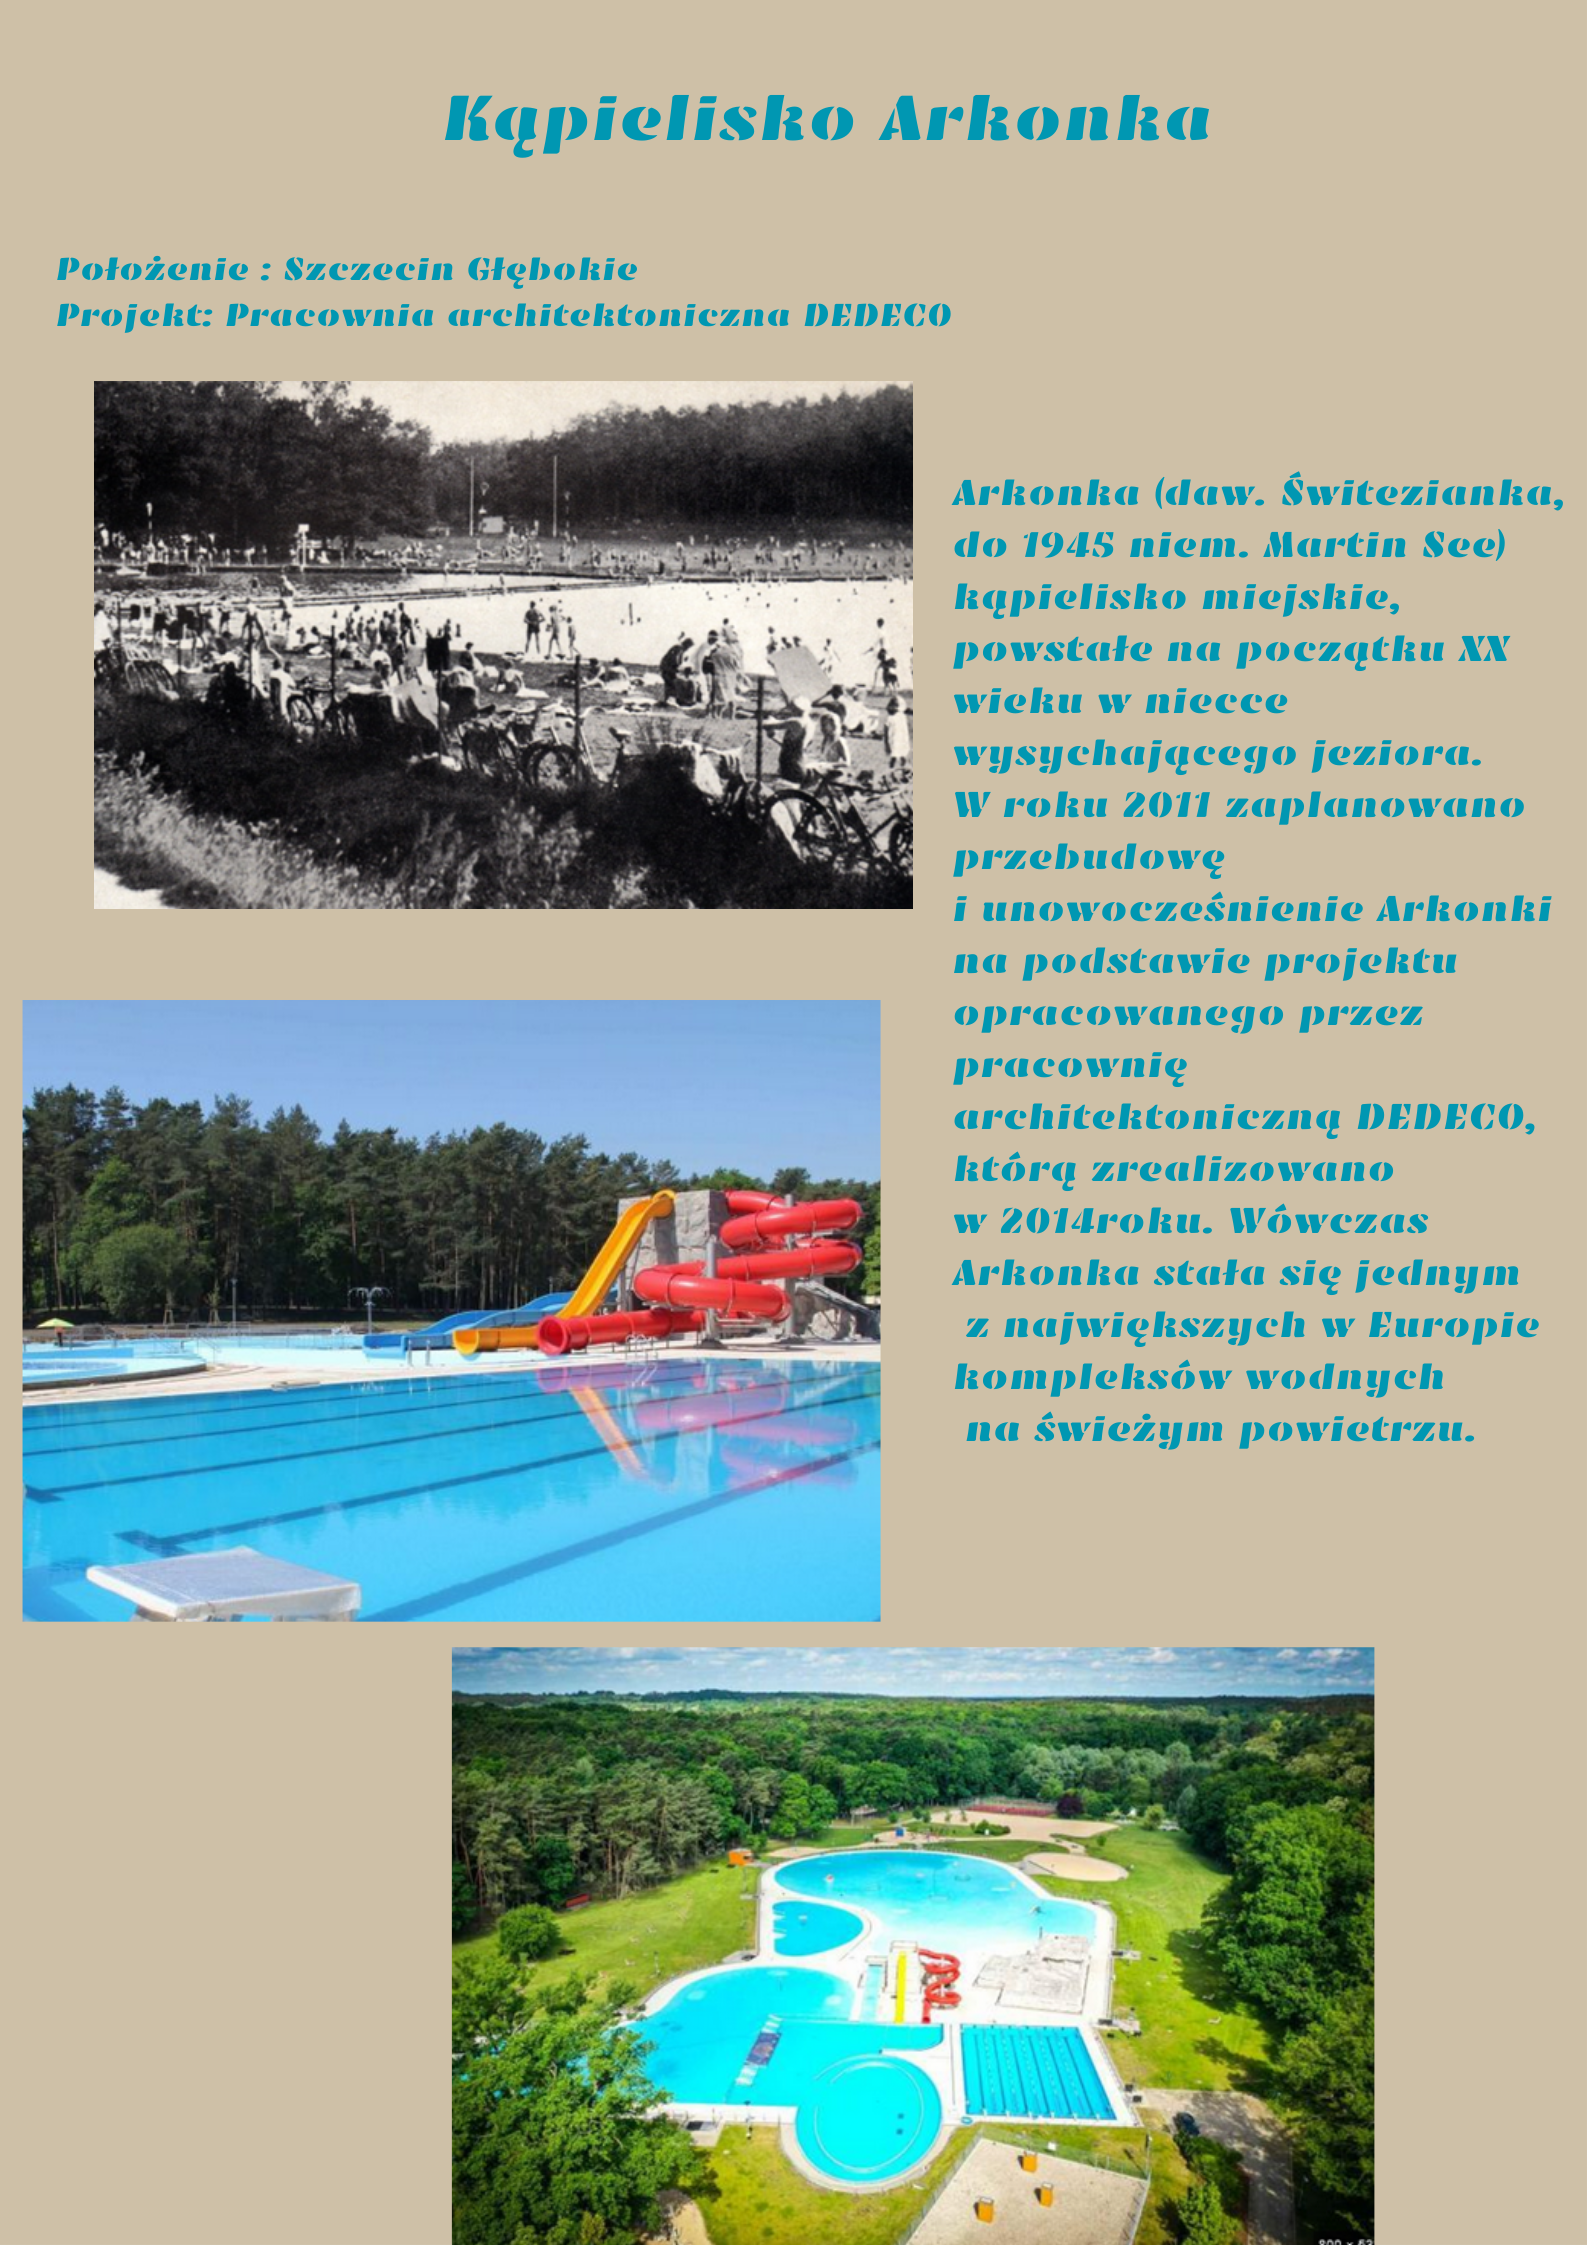 Plakat przedstawiający kąpielisko Arkonka